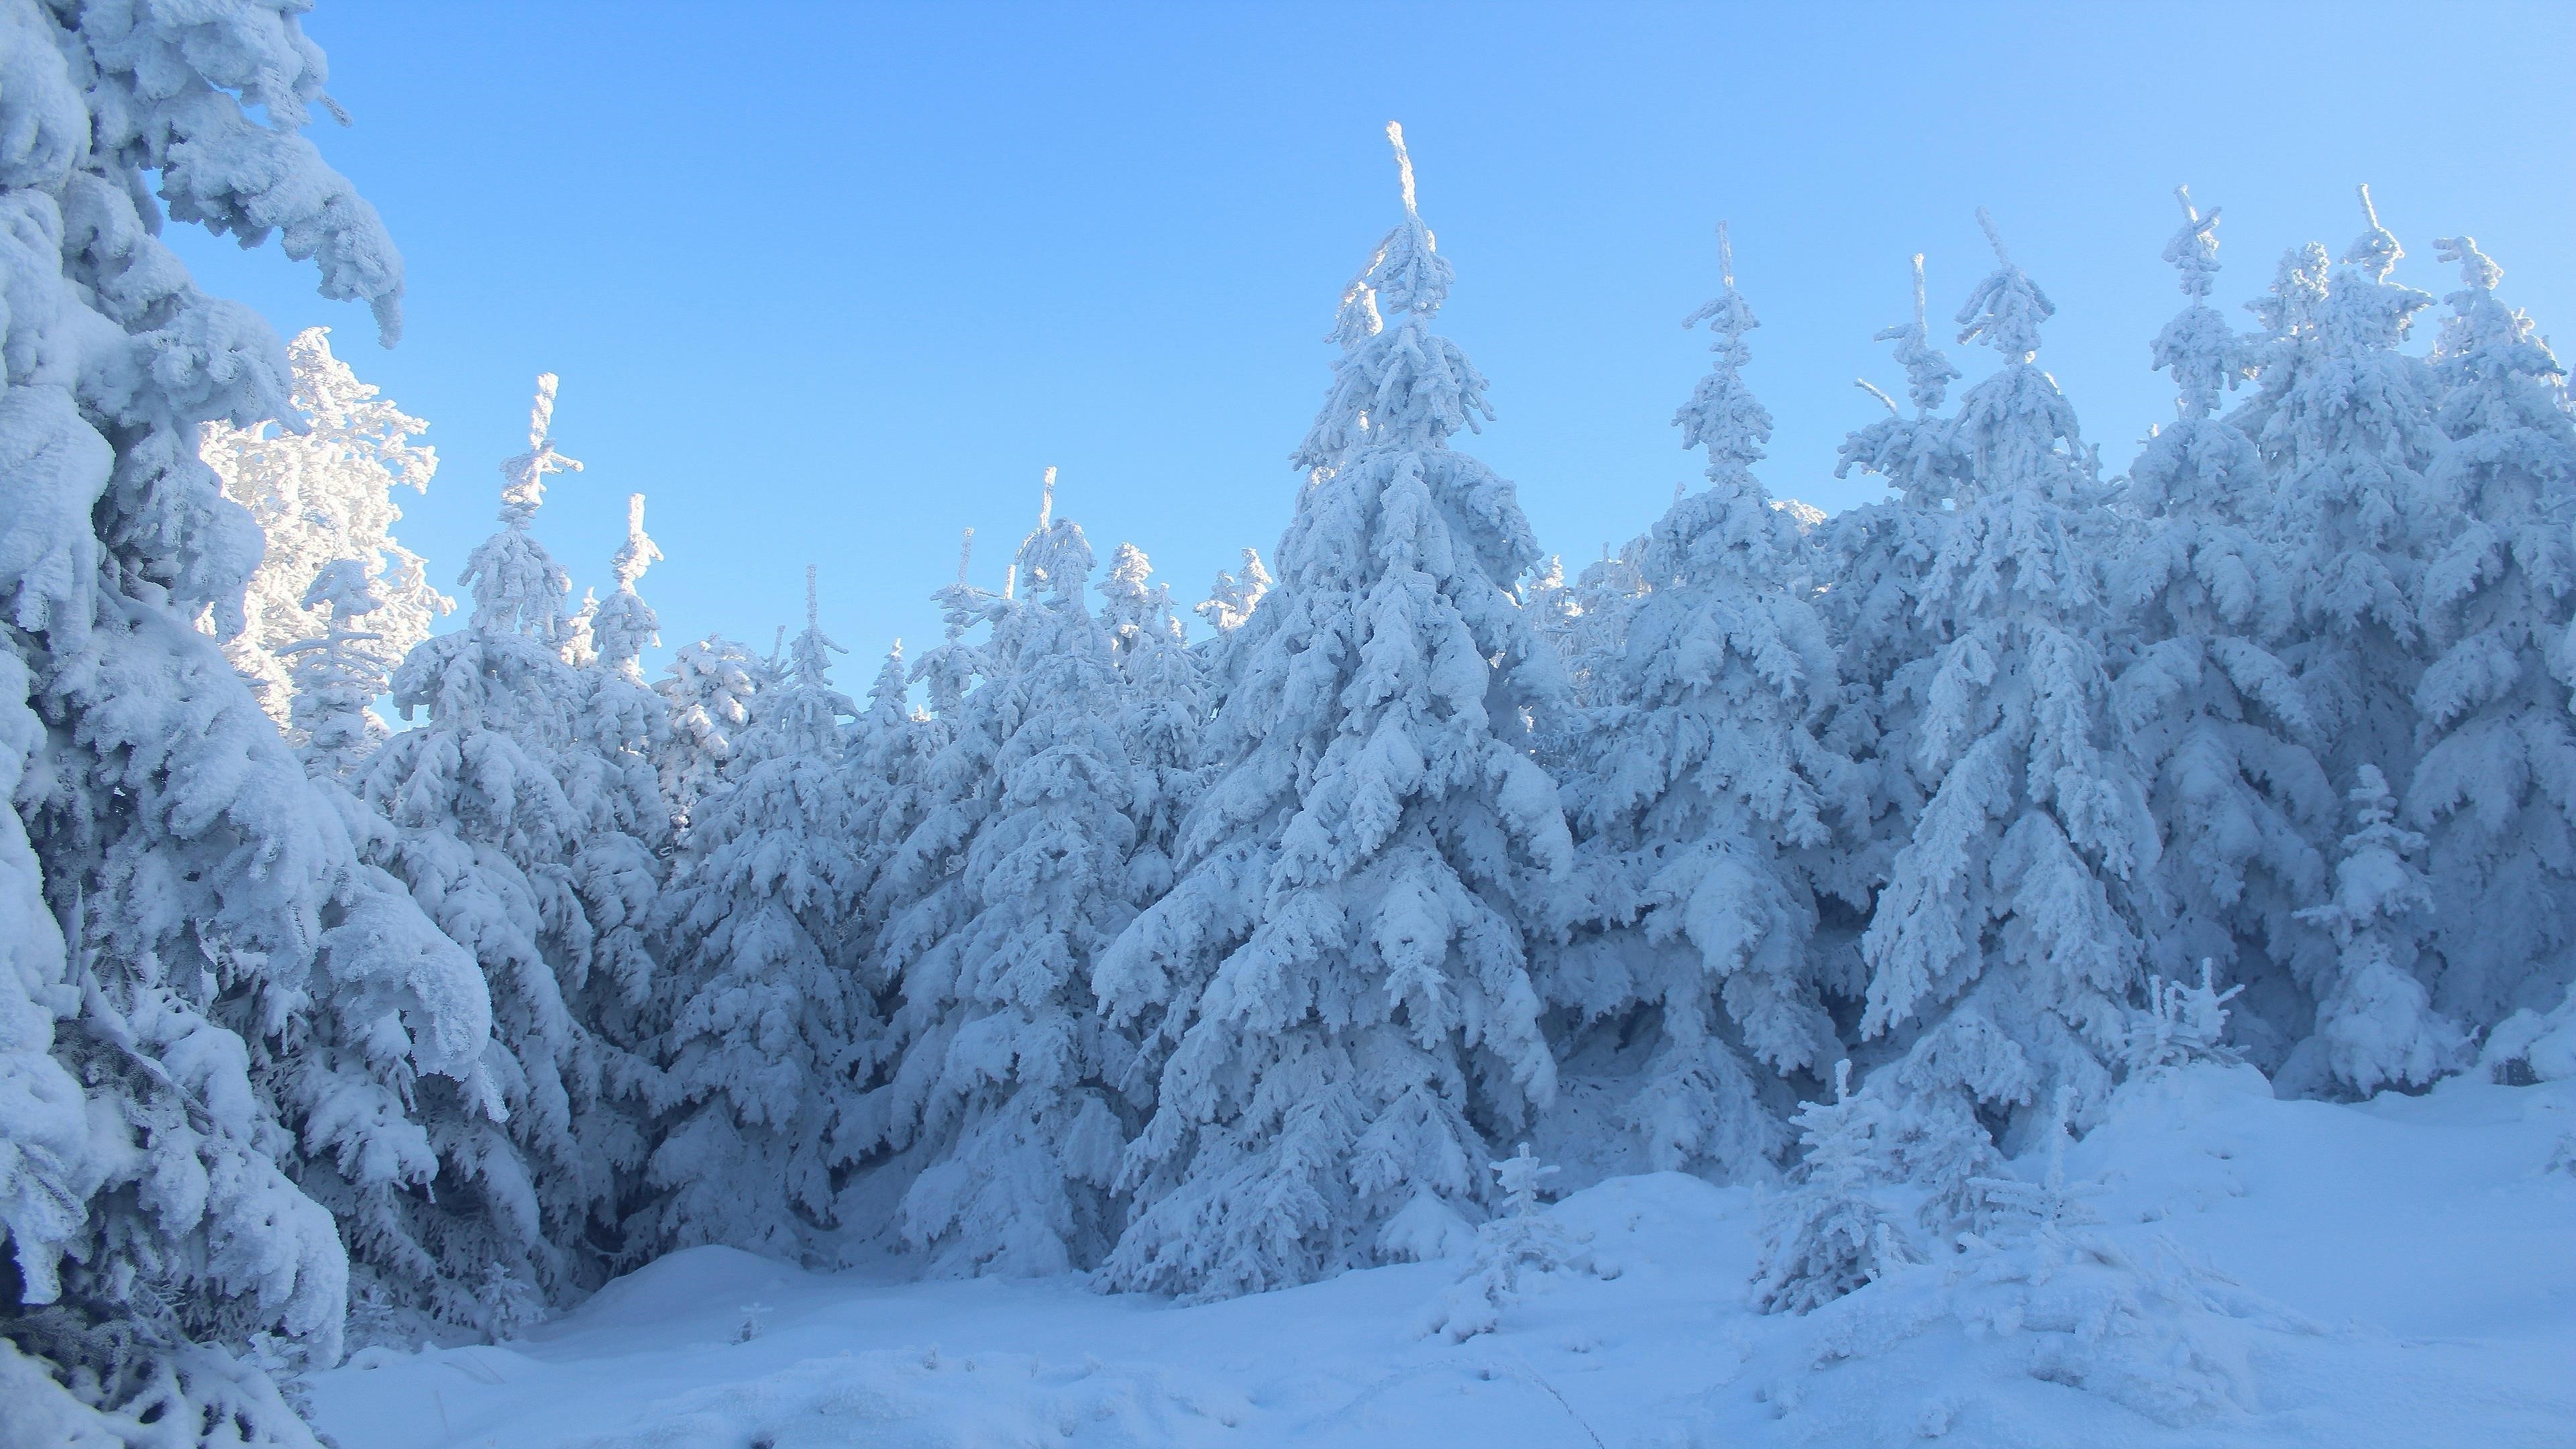 Заснеженные ели в лесу под голубым небом зима обои скачать